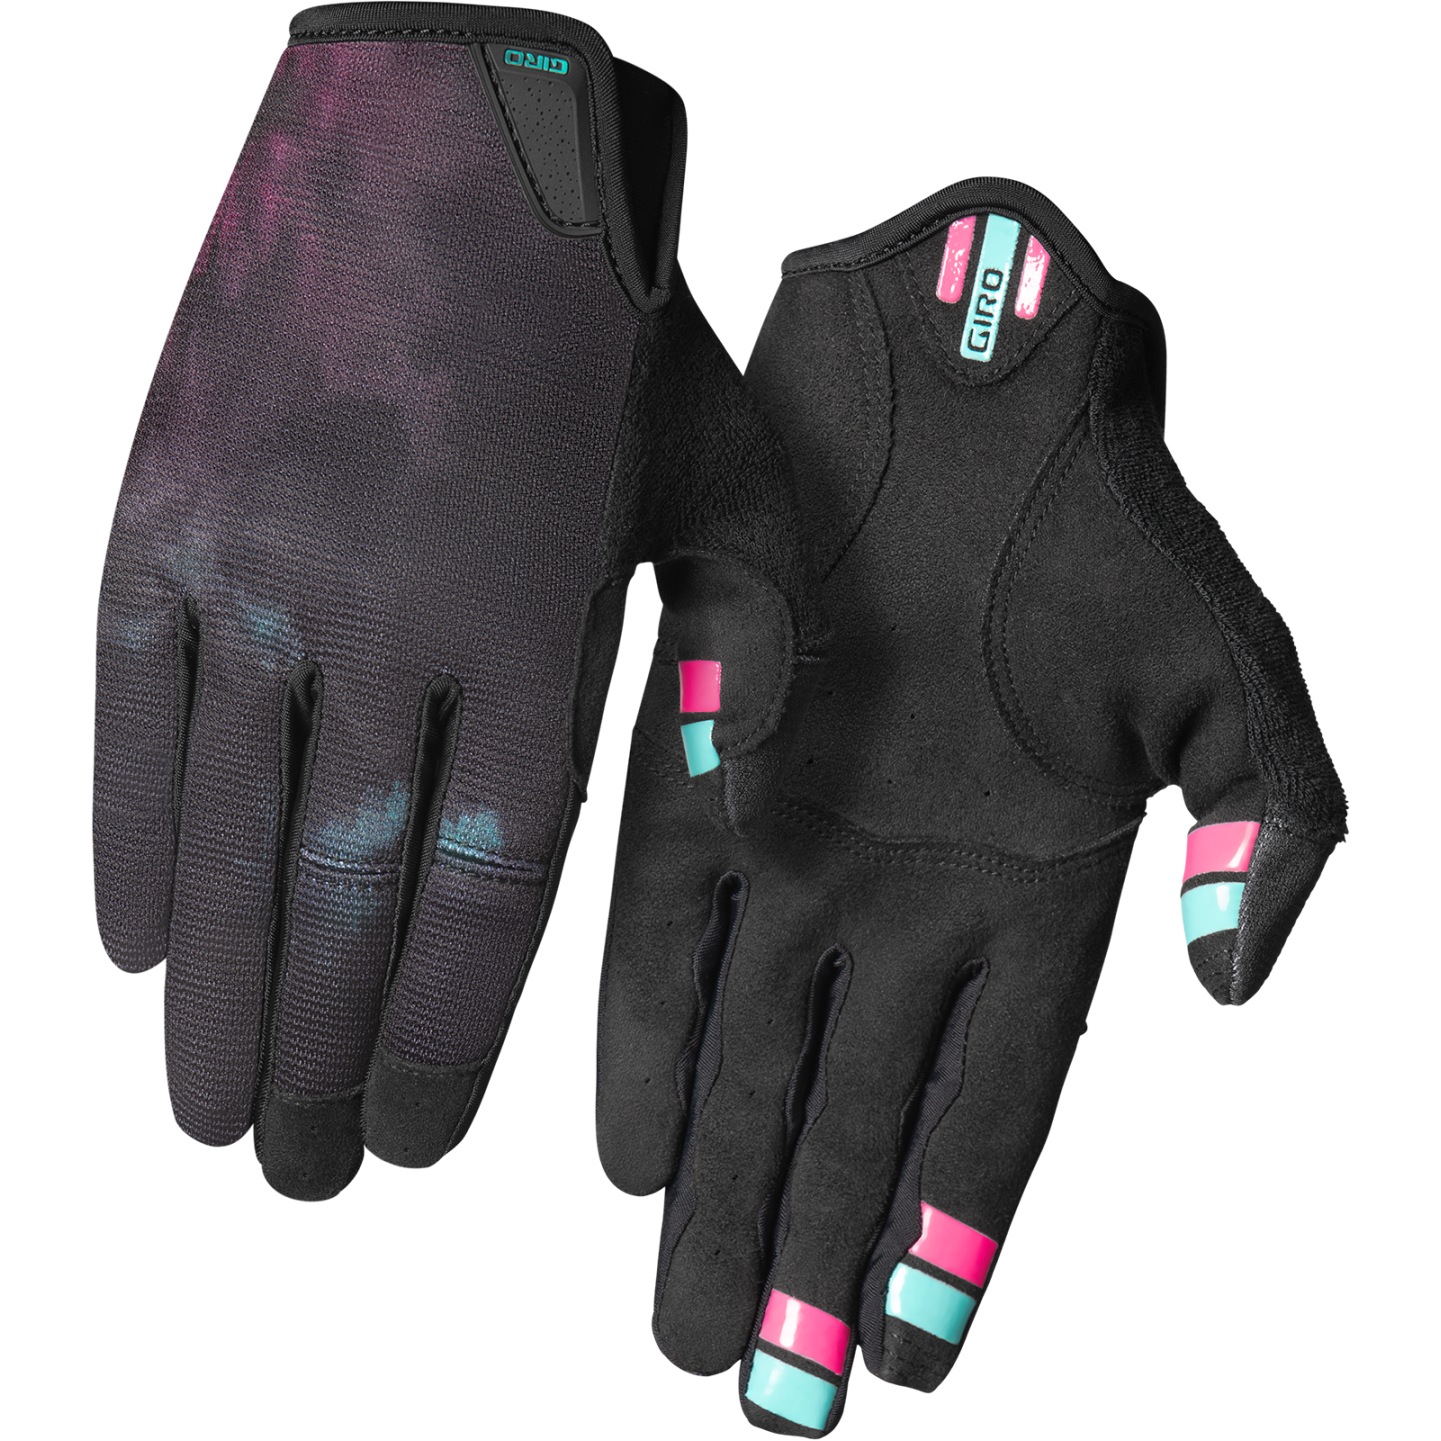 Productfoto van Giro La DND Handschoenen Dames - black ice dye